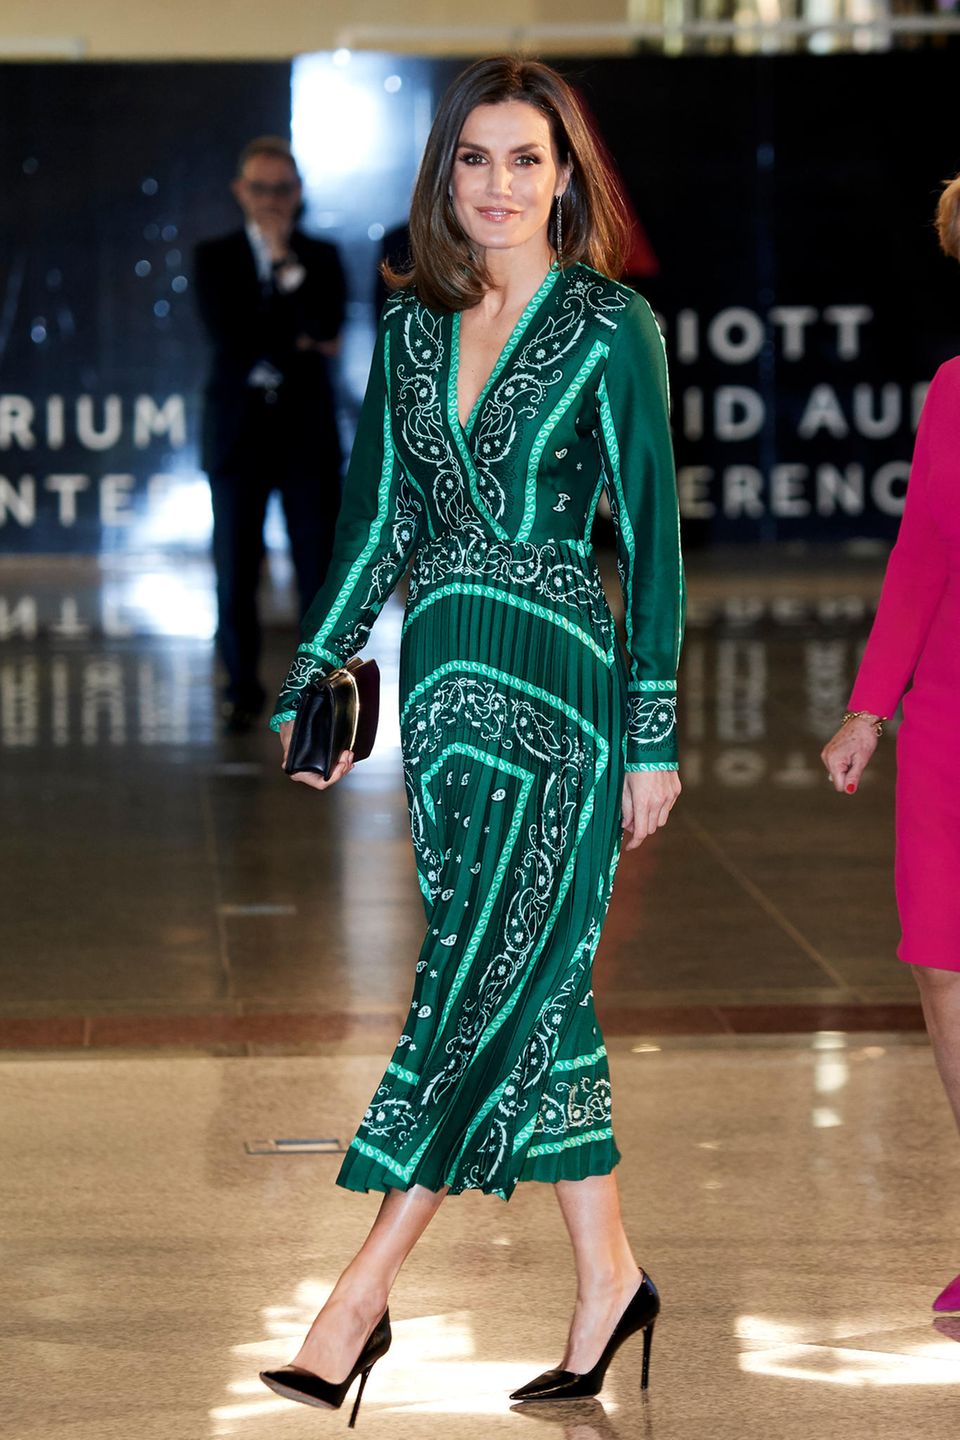 Weihnachten bei den Royals: Königin Letizia im tannengrünen Kleid